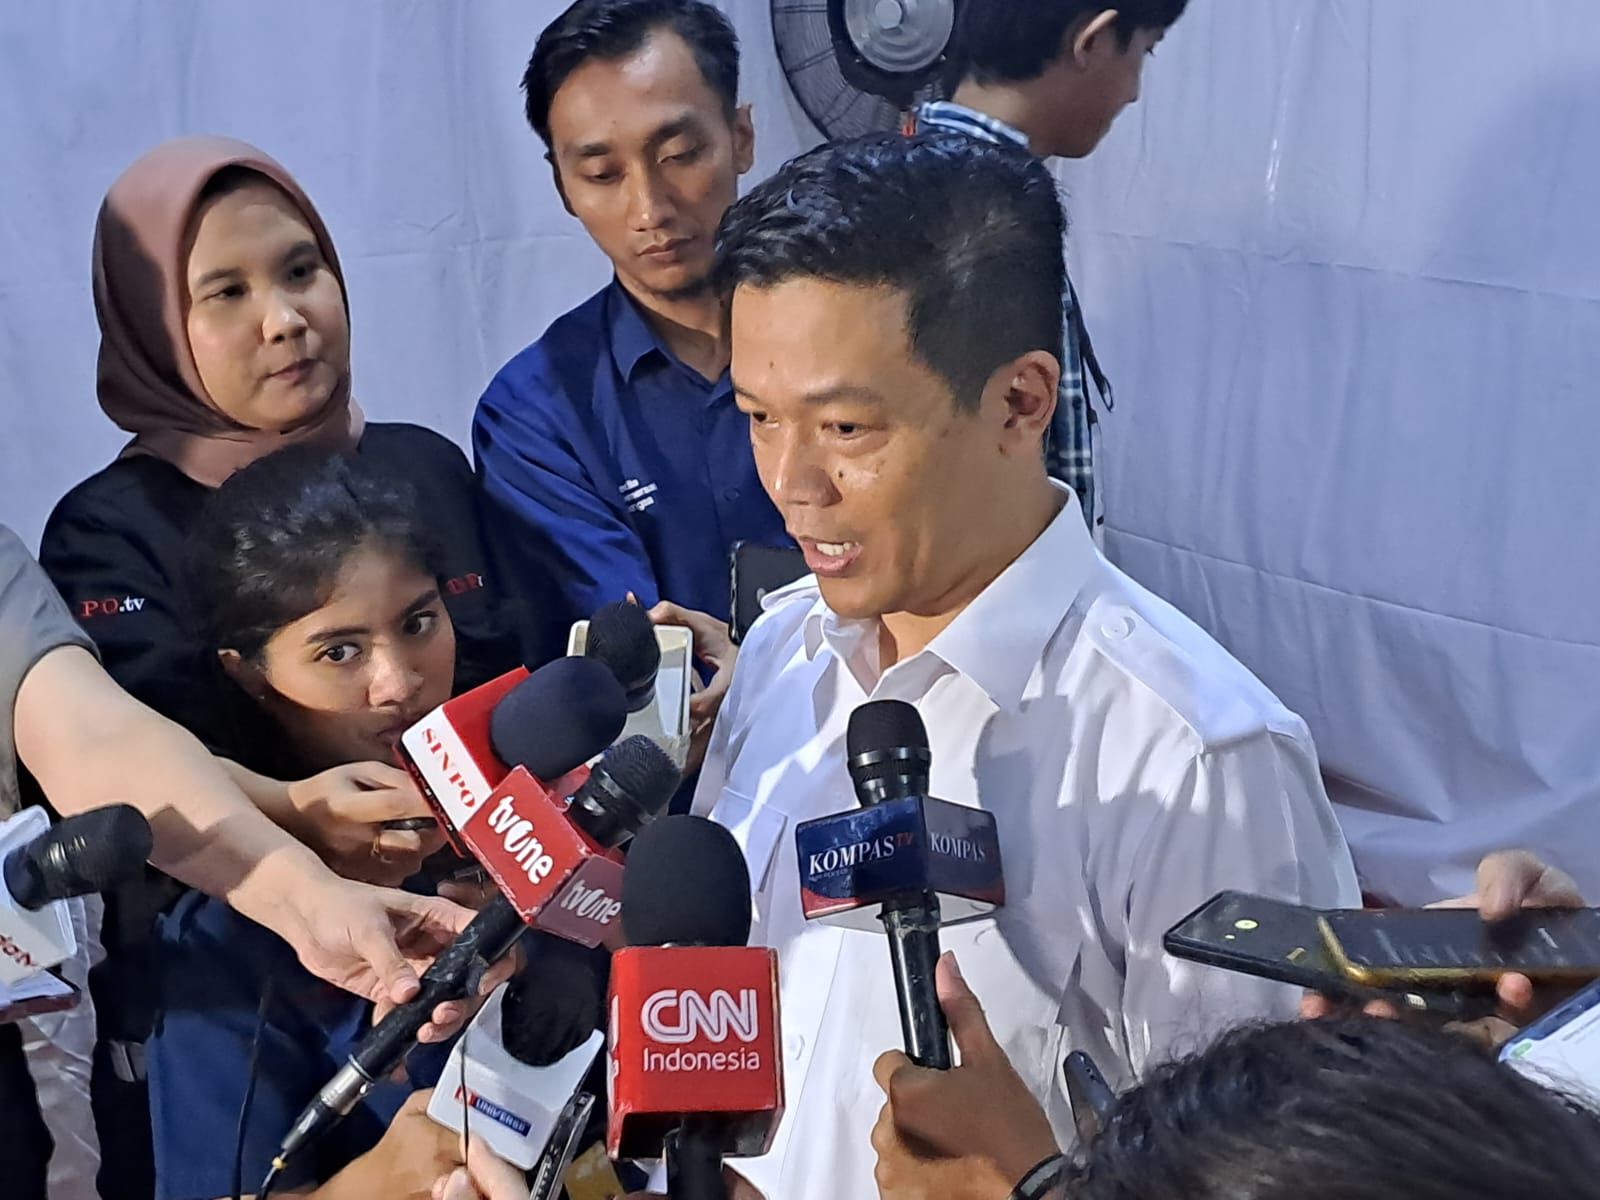 Gerindra Angkat Bicara Soal Keberadaan Marzuki Alie dan Jimly Asshidiqie saat Prabowo Sambut Wiranto